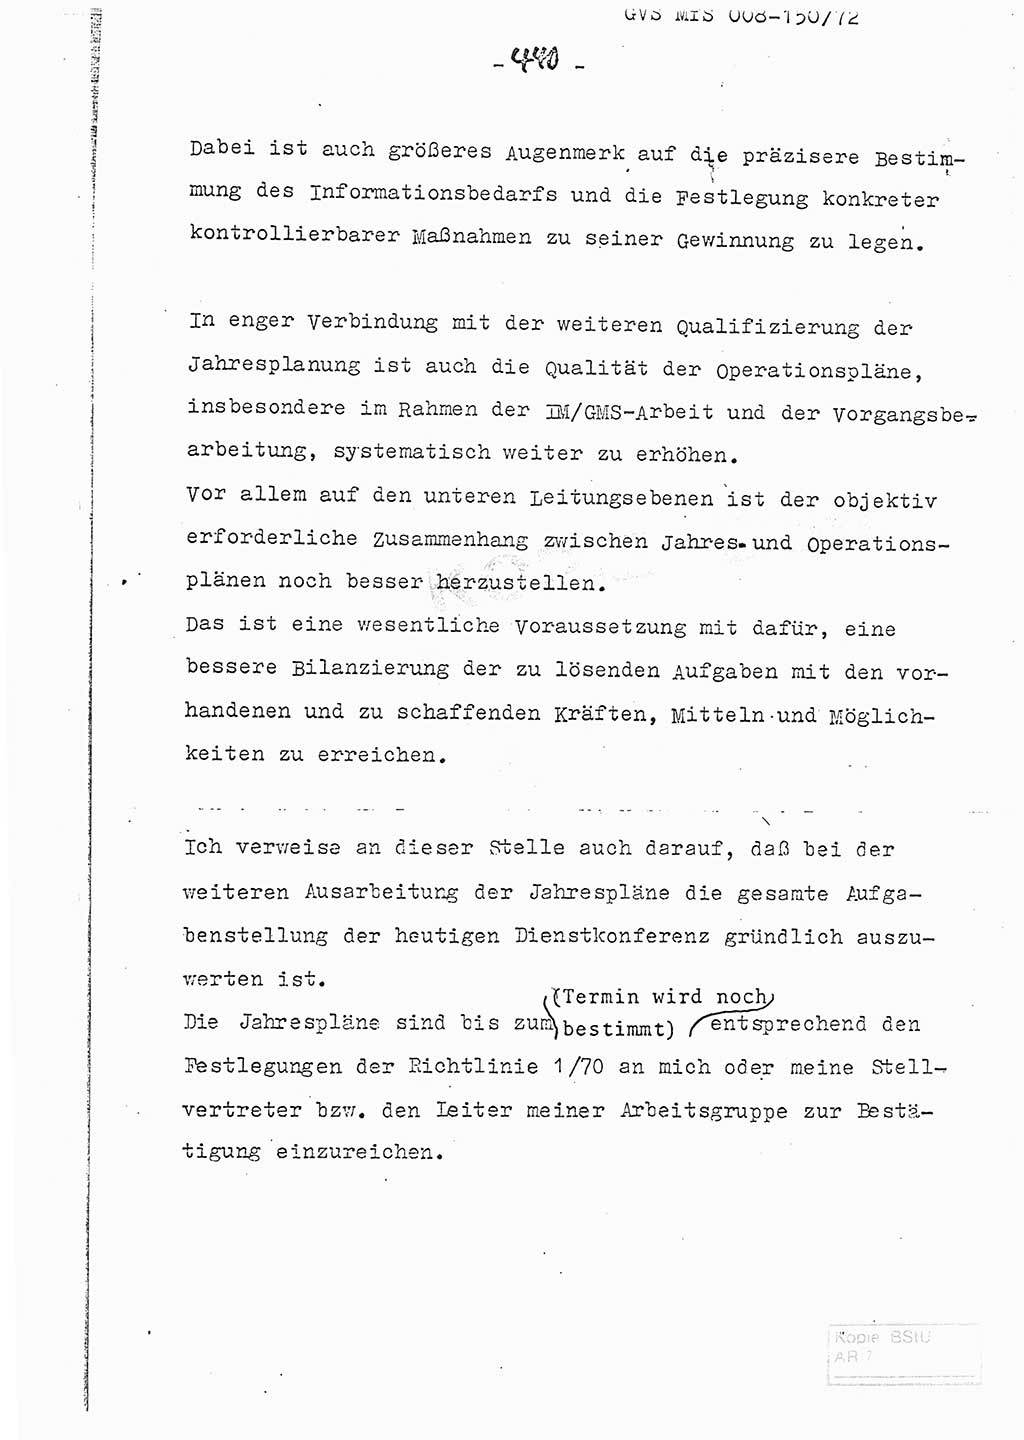 Referat (Entwurf) des Genossen Minister (Generaloberst Erich Mielke) auf der Dienstkonferenz 1972, Ministerium für Staatssicherheit (MfS) [Deutsche Demokratische Republik (DDR)], Der Minister, Geheime Verschlußsache (GVS) 008-150/72, Berlin 25.2.1972, Seite 440 (Ref. Entw. DK MfS DDR Min. GVS 008-150/72 1972, S. 440)